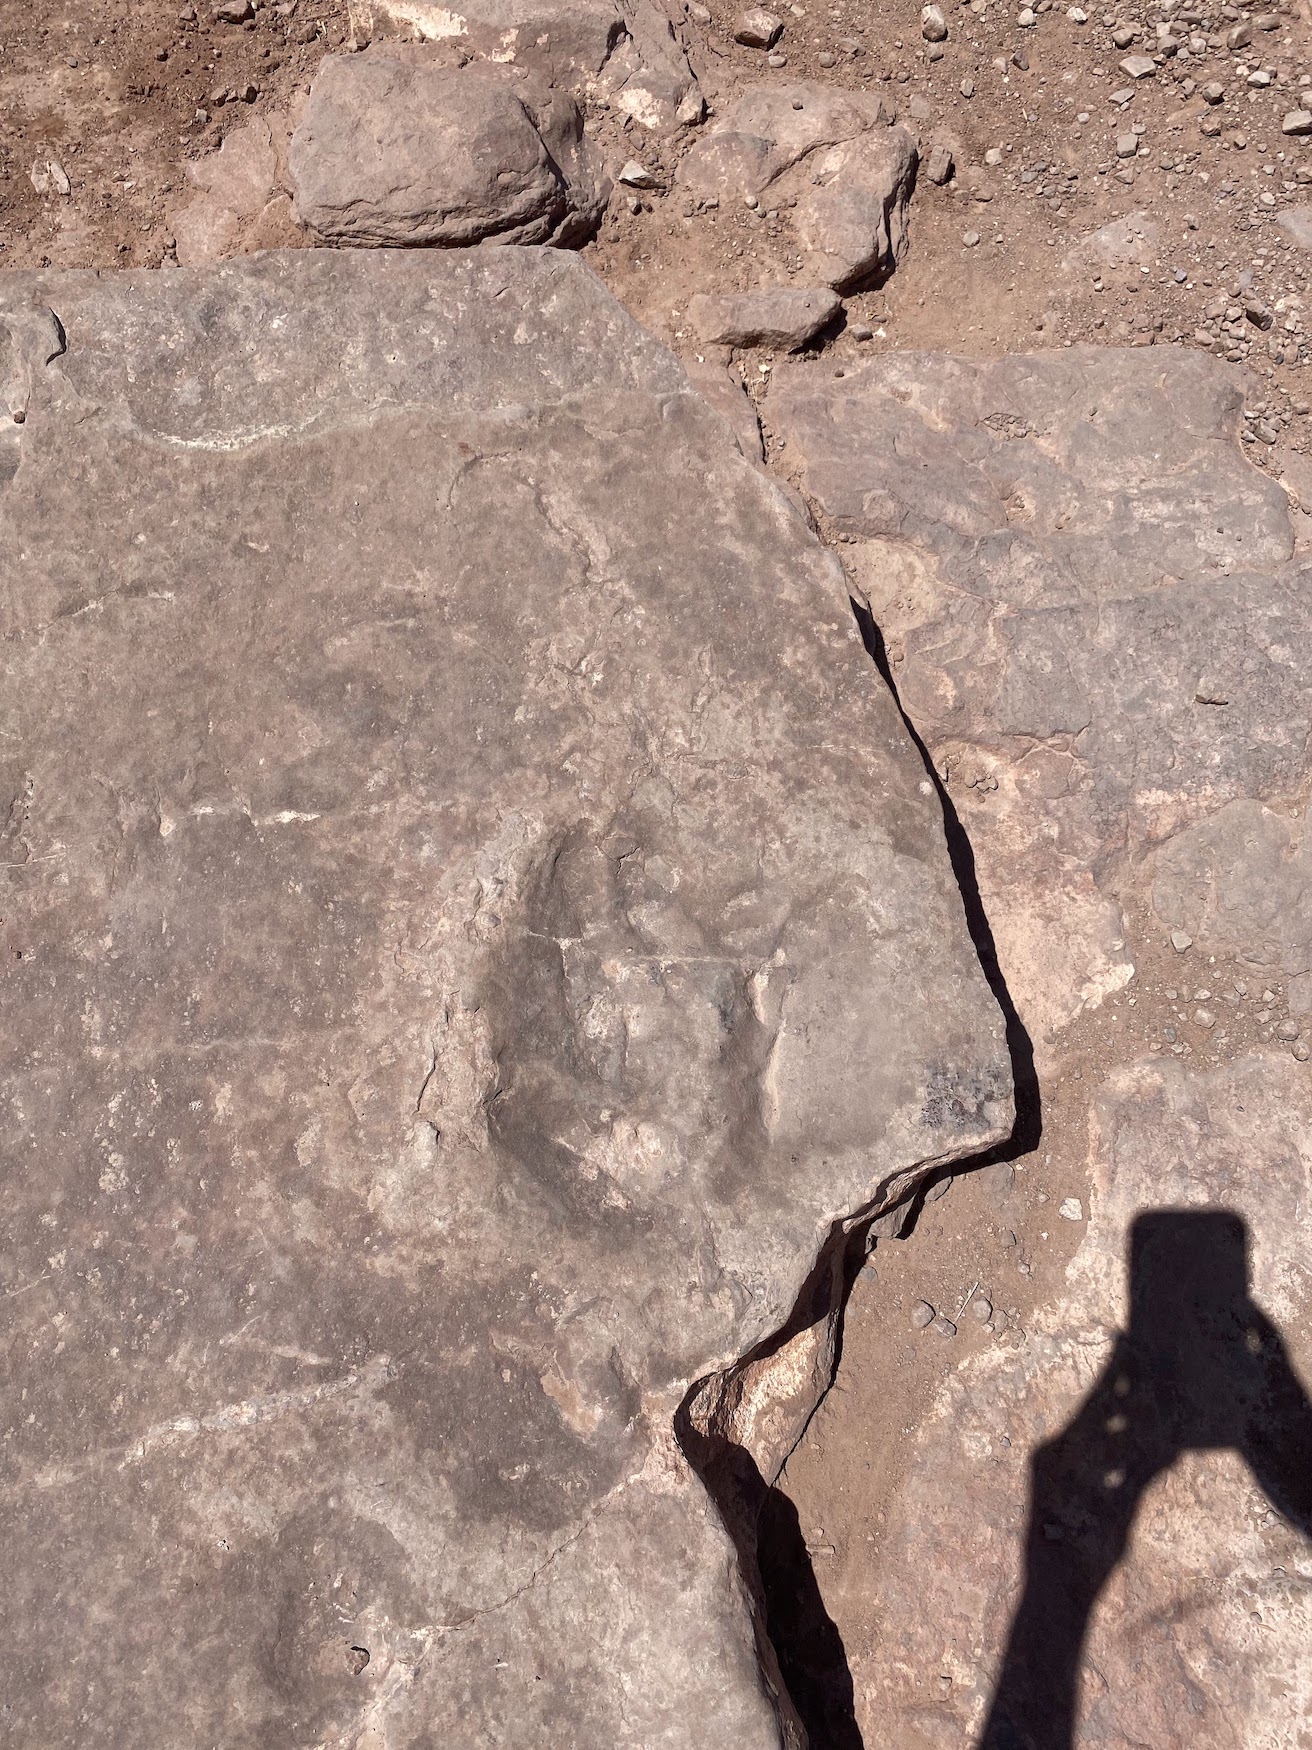 a dinosaur footprint in slickrock